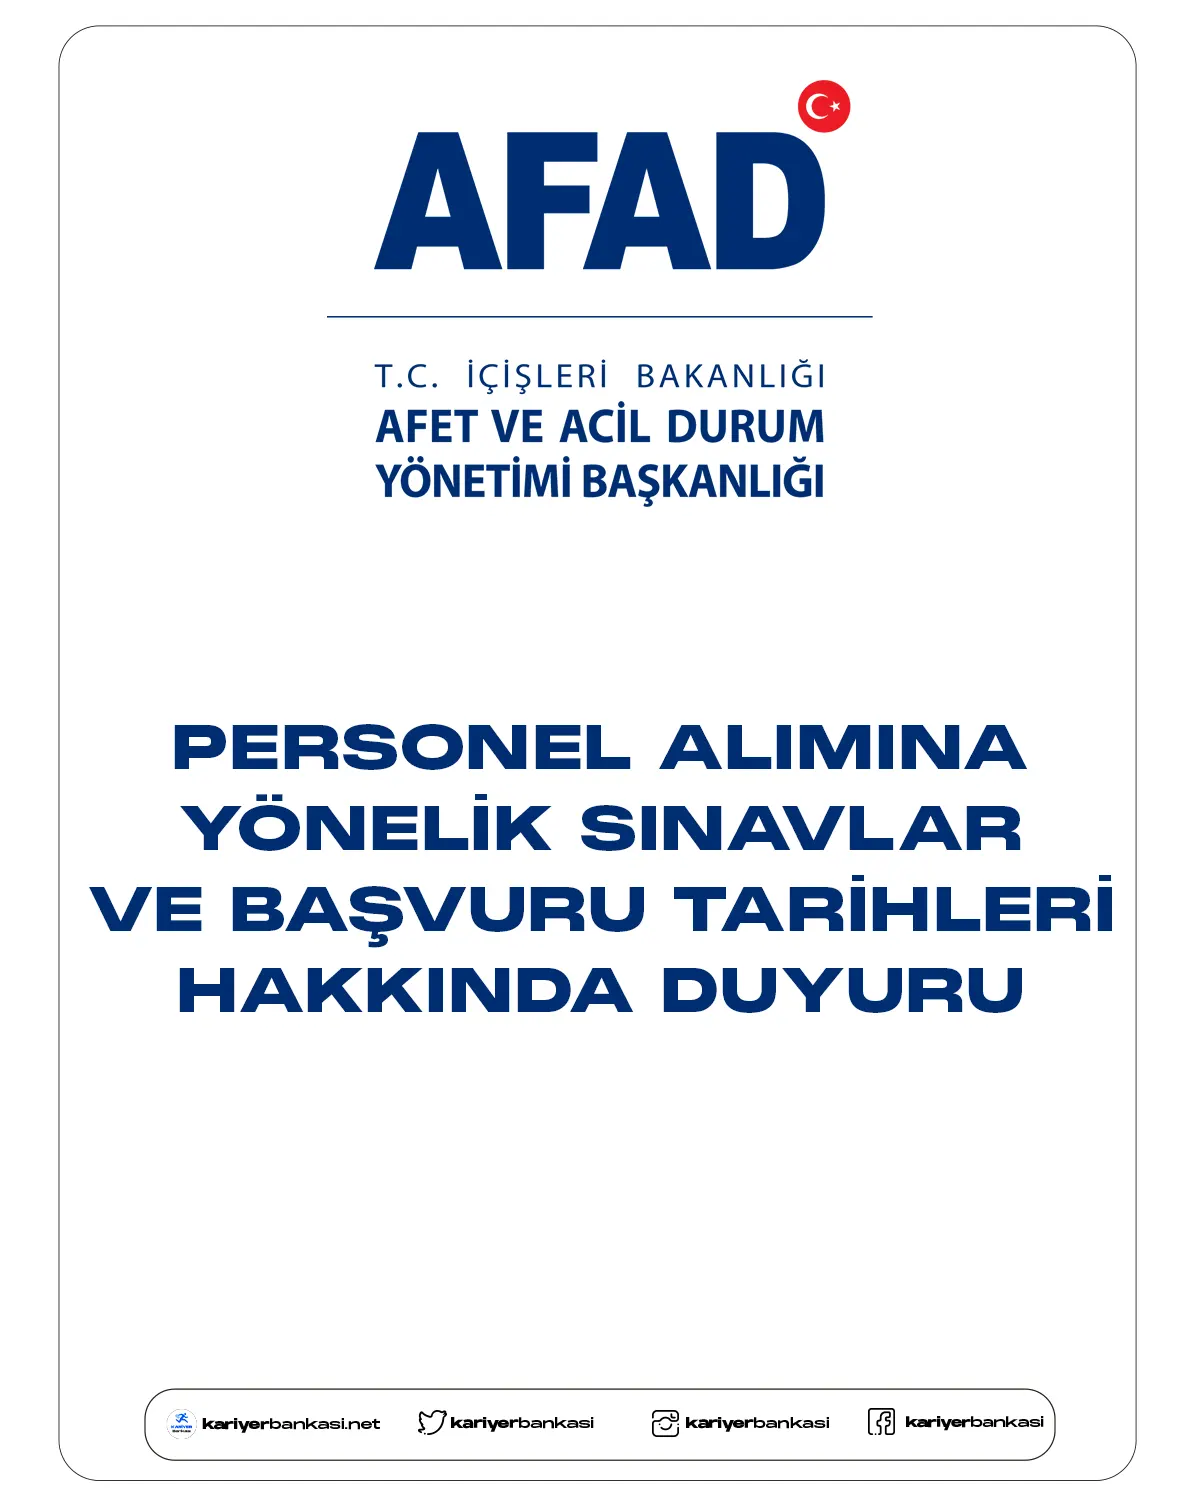 AFAD personel alımı yönelik sınavları ve başvuruları hakkında duyuru yayımladı. Kahramanmaraş'ta meydana gelen büyük depremler nedeniyle personel alımı giriş (sözlü) sınavlarının ileri bir tarihte yapılmak üzere ertelediği ve başvuru sürelerinin uzatıldığı aktarıldı.